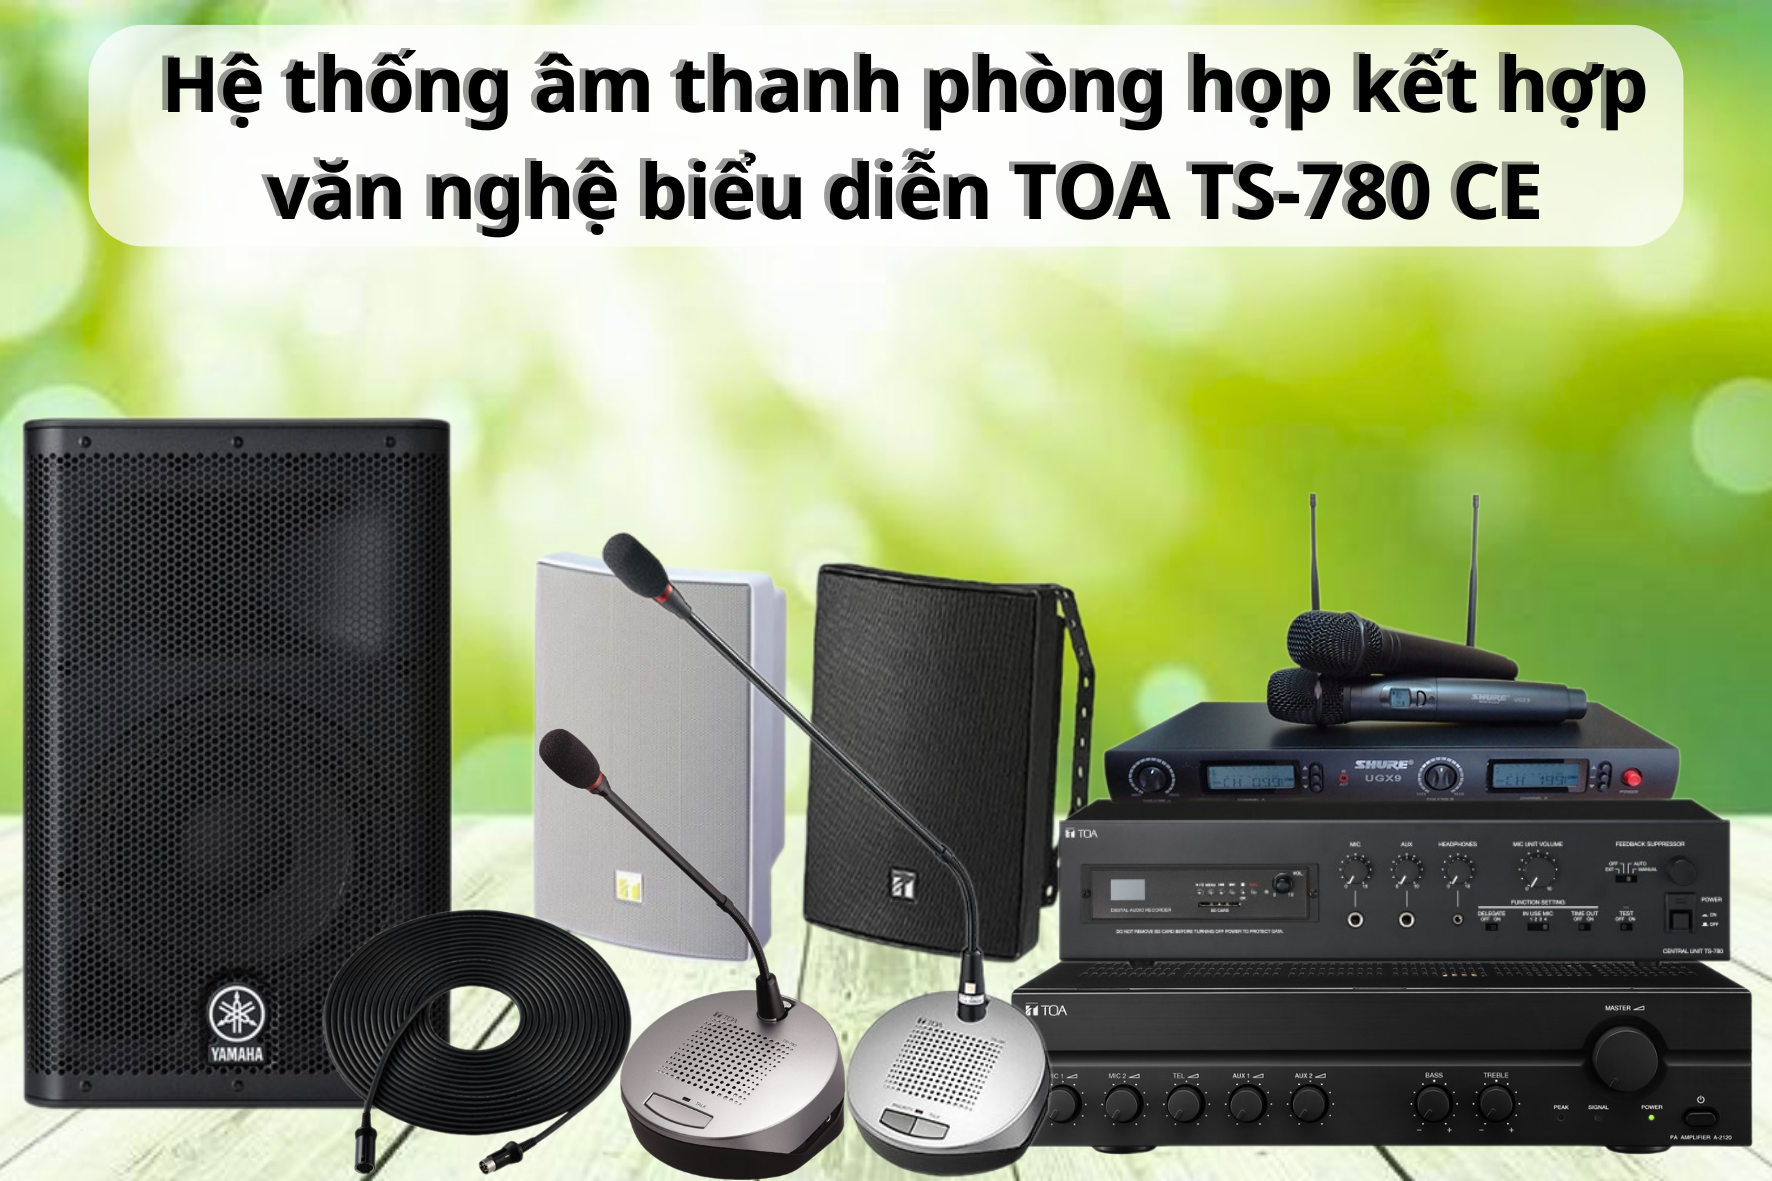 Hệ thống âm thanh phòng họp kết hợp văn nghệ biểu diễn TOA TS-780 CE